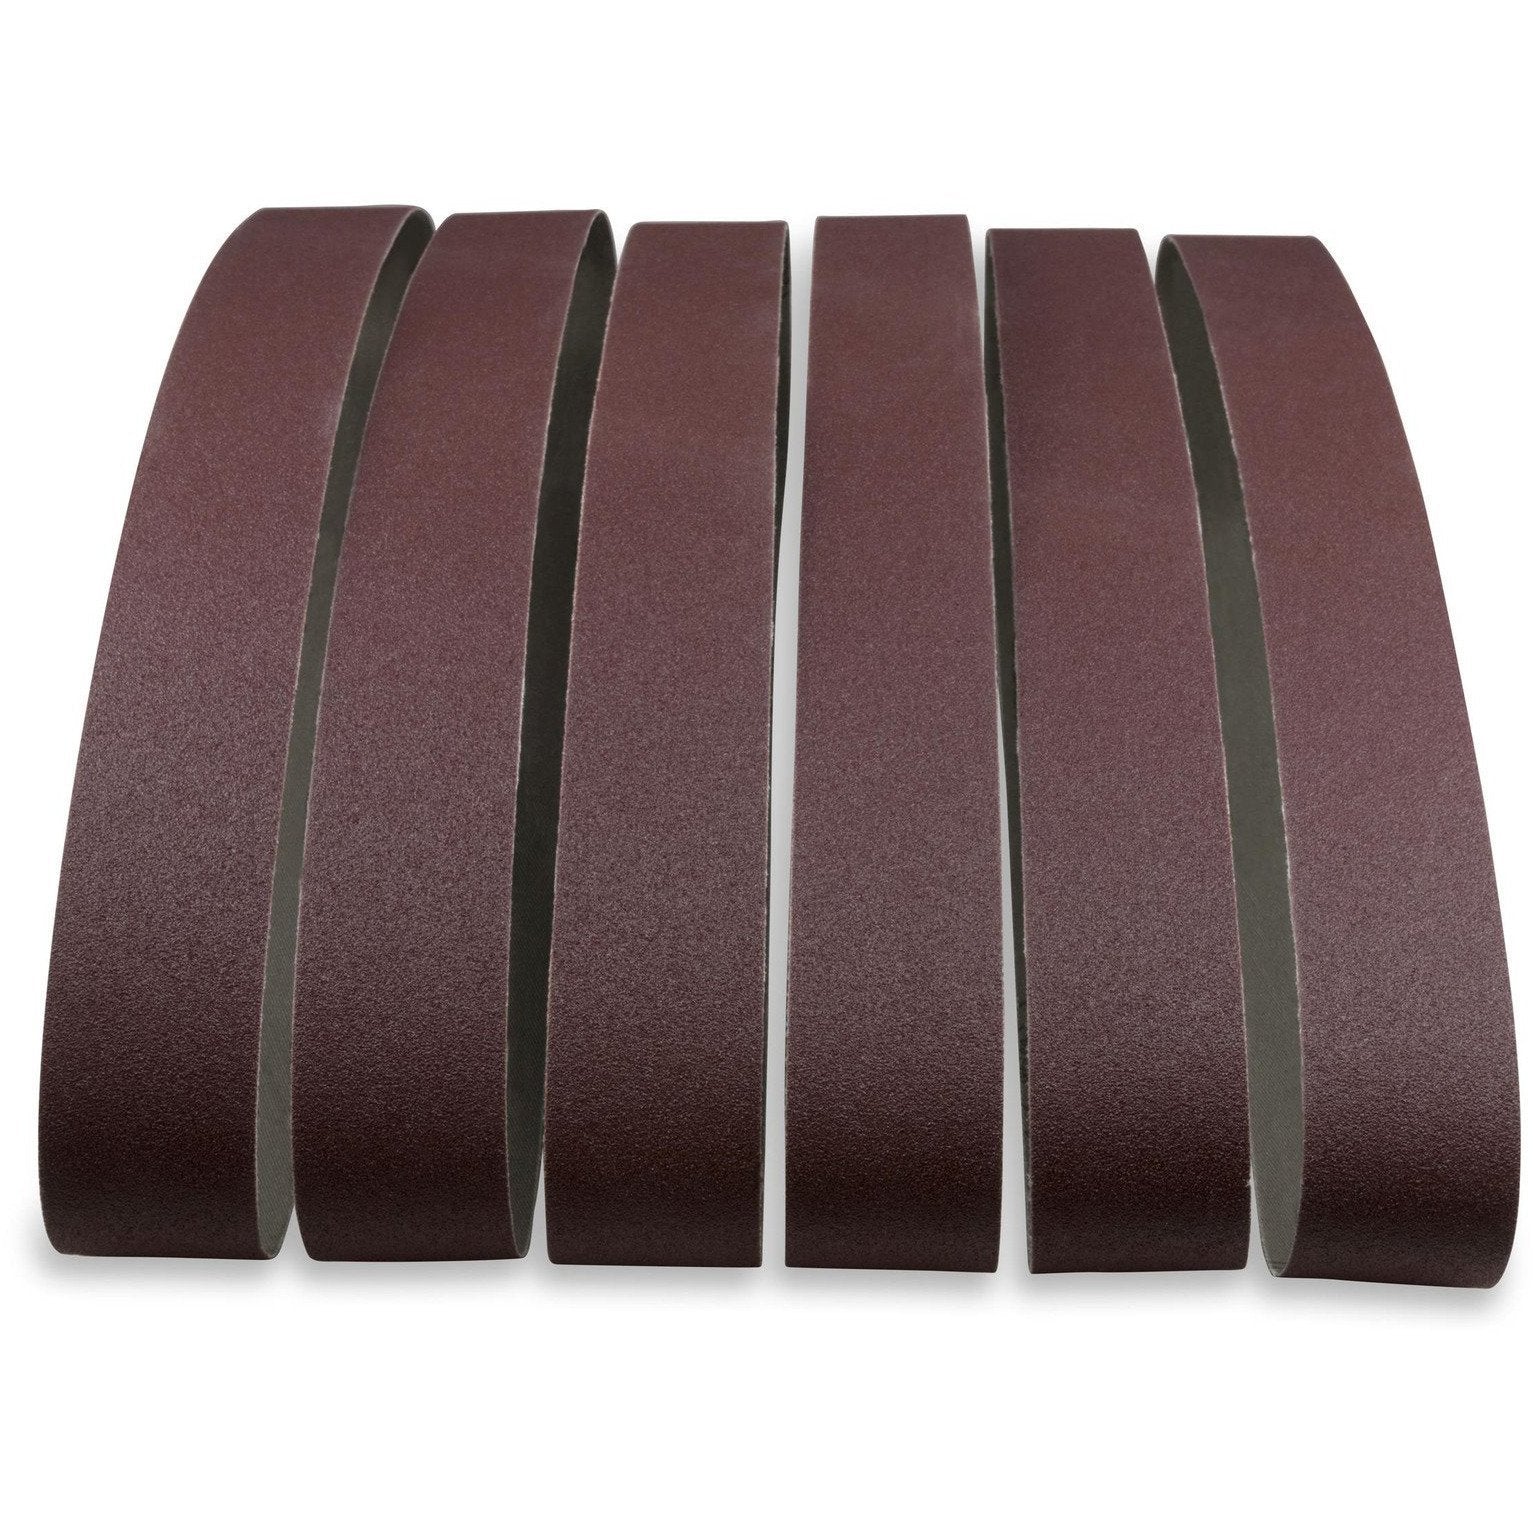 1 X 44 Inch Aluminum Oxide Sanding Belts, 12 Pack - Red Label Abrasives